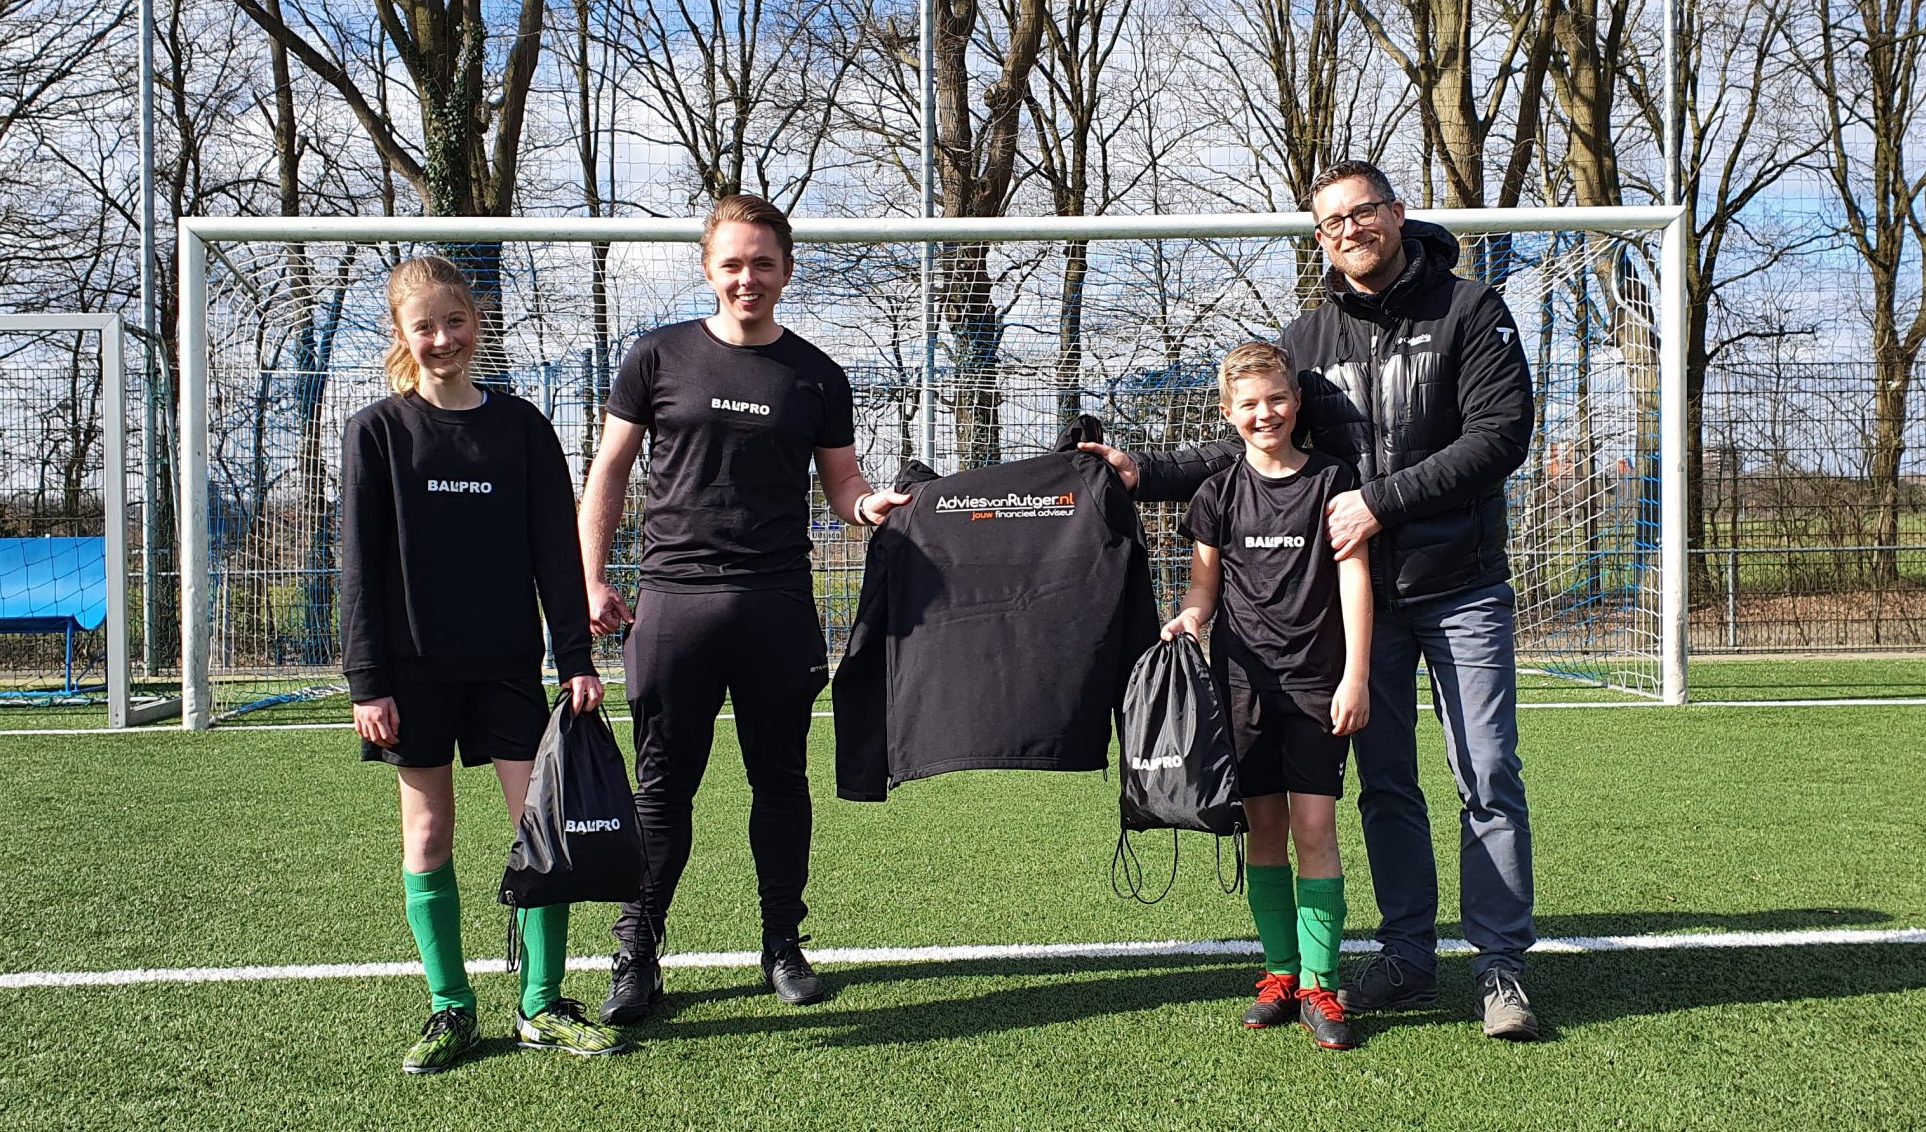 Balpro advies van Rutger sponsor foto Goud pakket Wageningen Voetbalschool Wageningen Bennekom